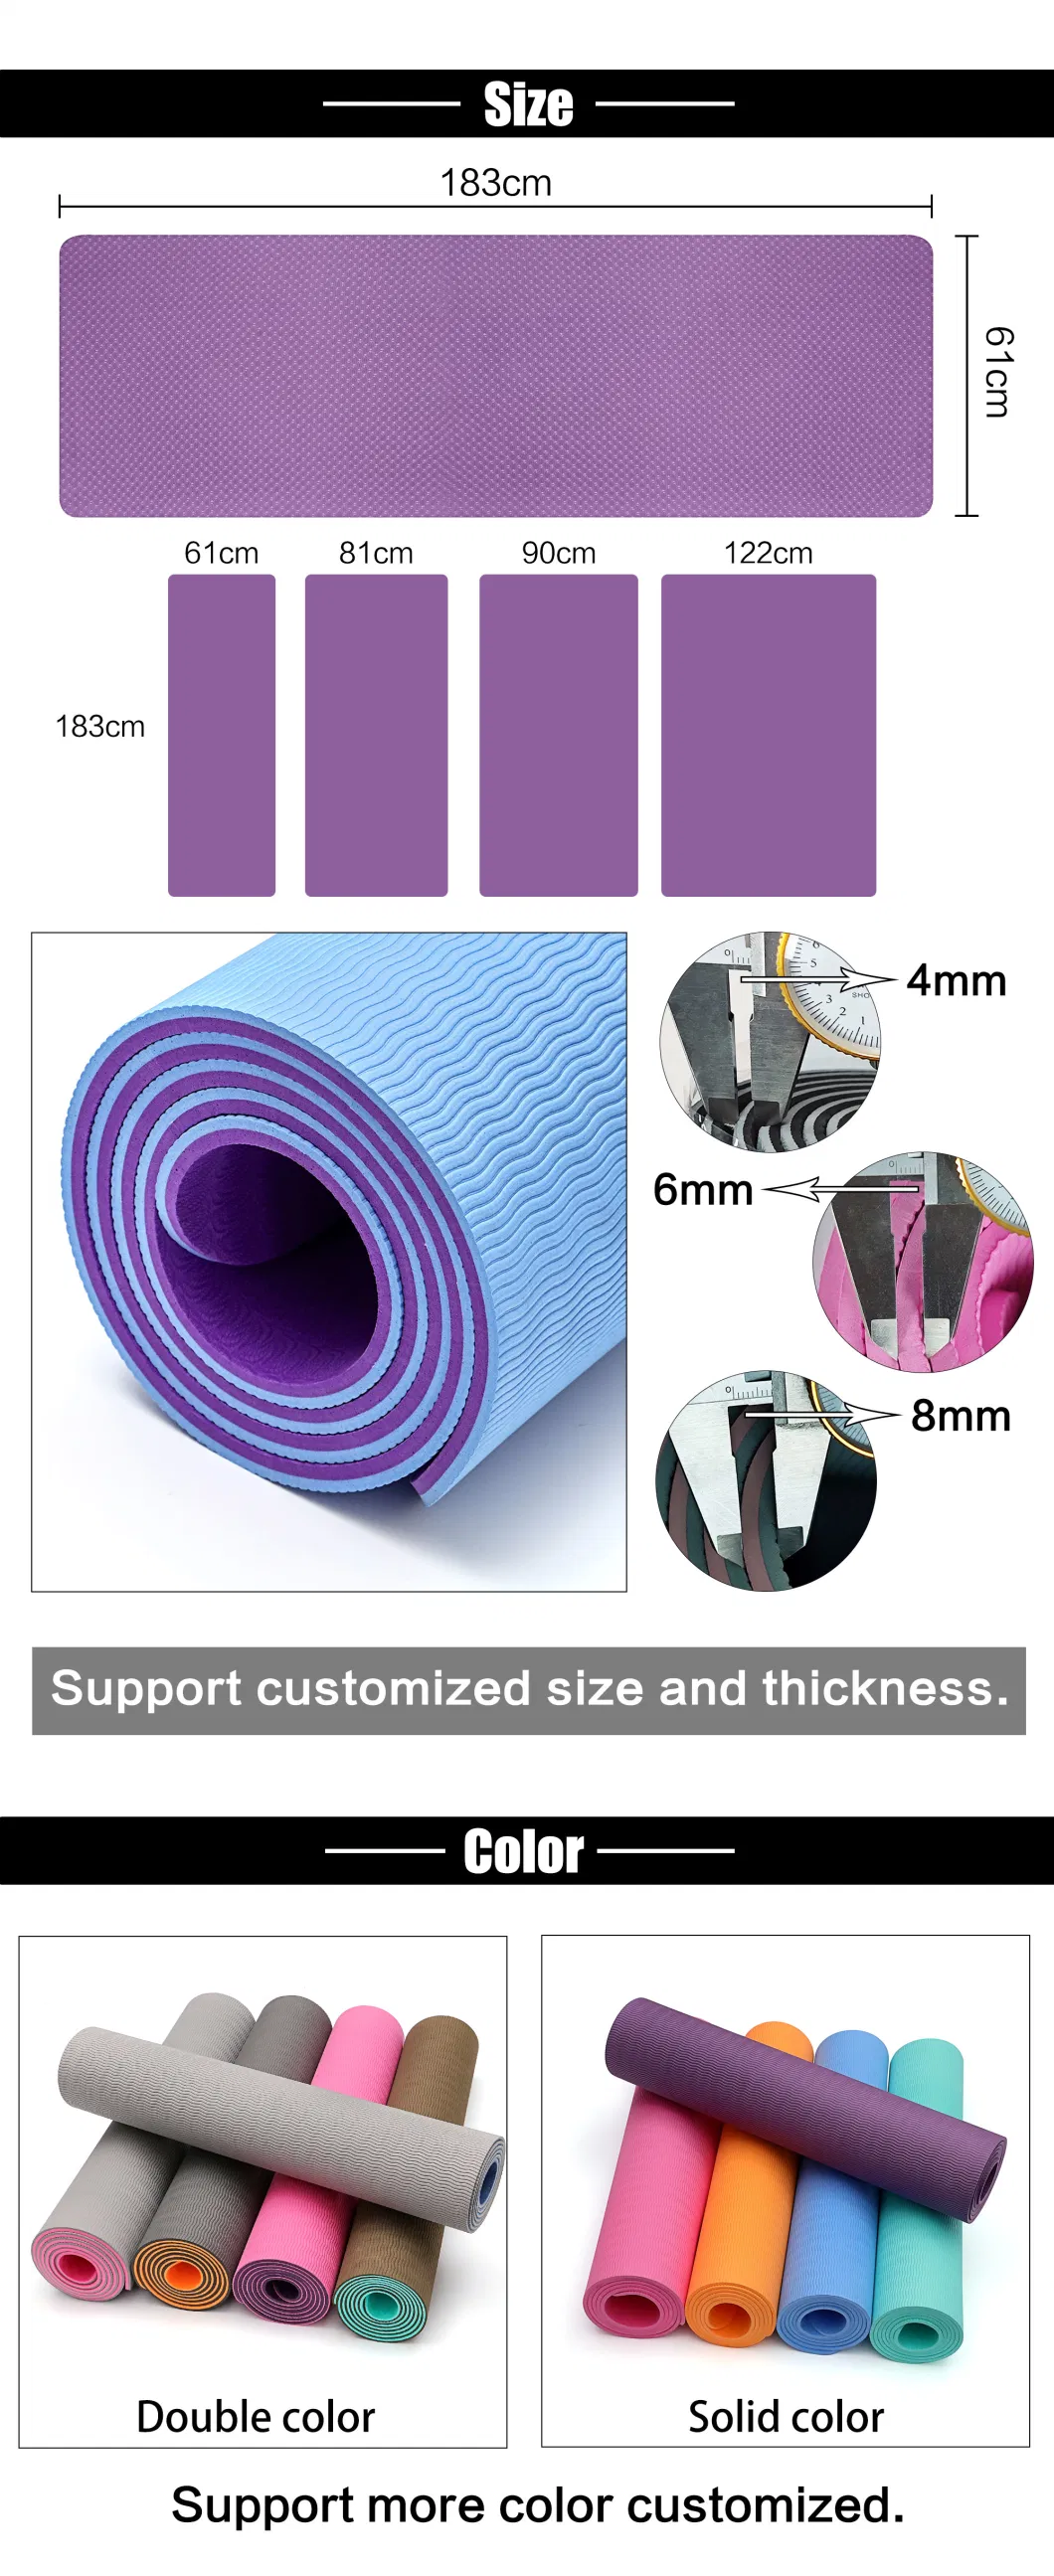 Custom Size High Density Exercise Yoga Mats Non Slip Eco Friendly for Yoga Fitness Training